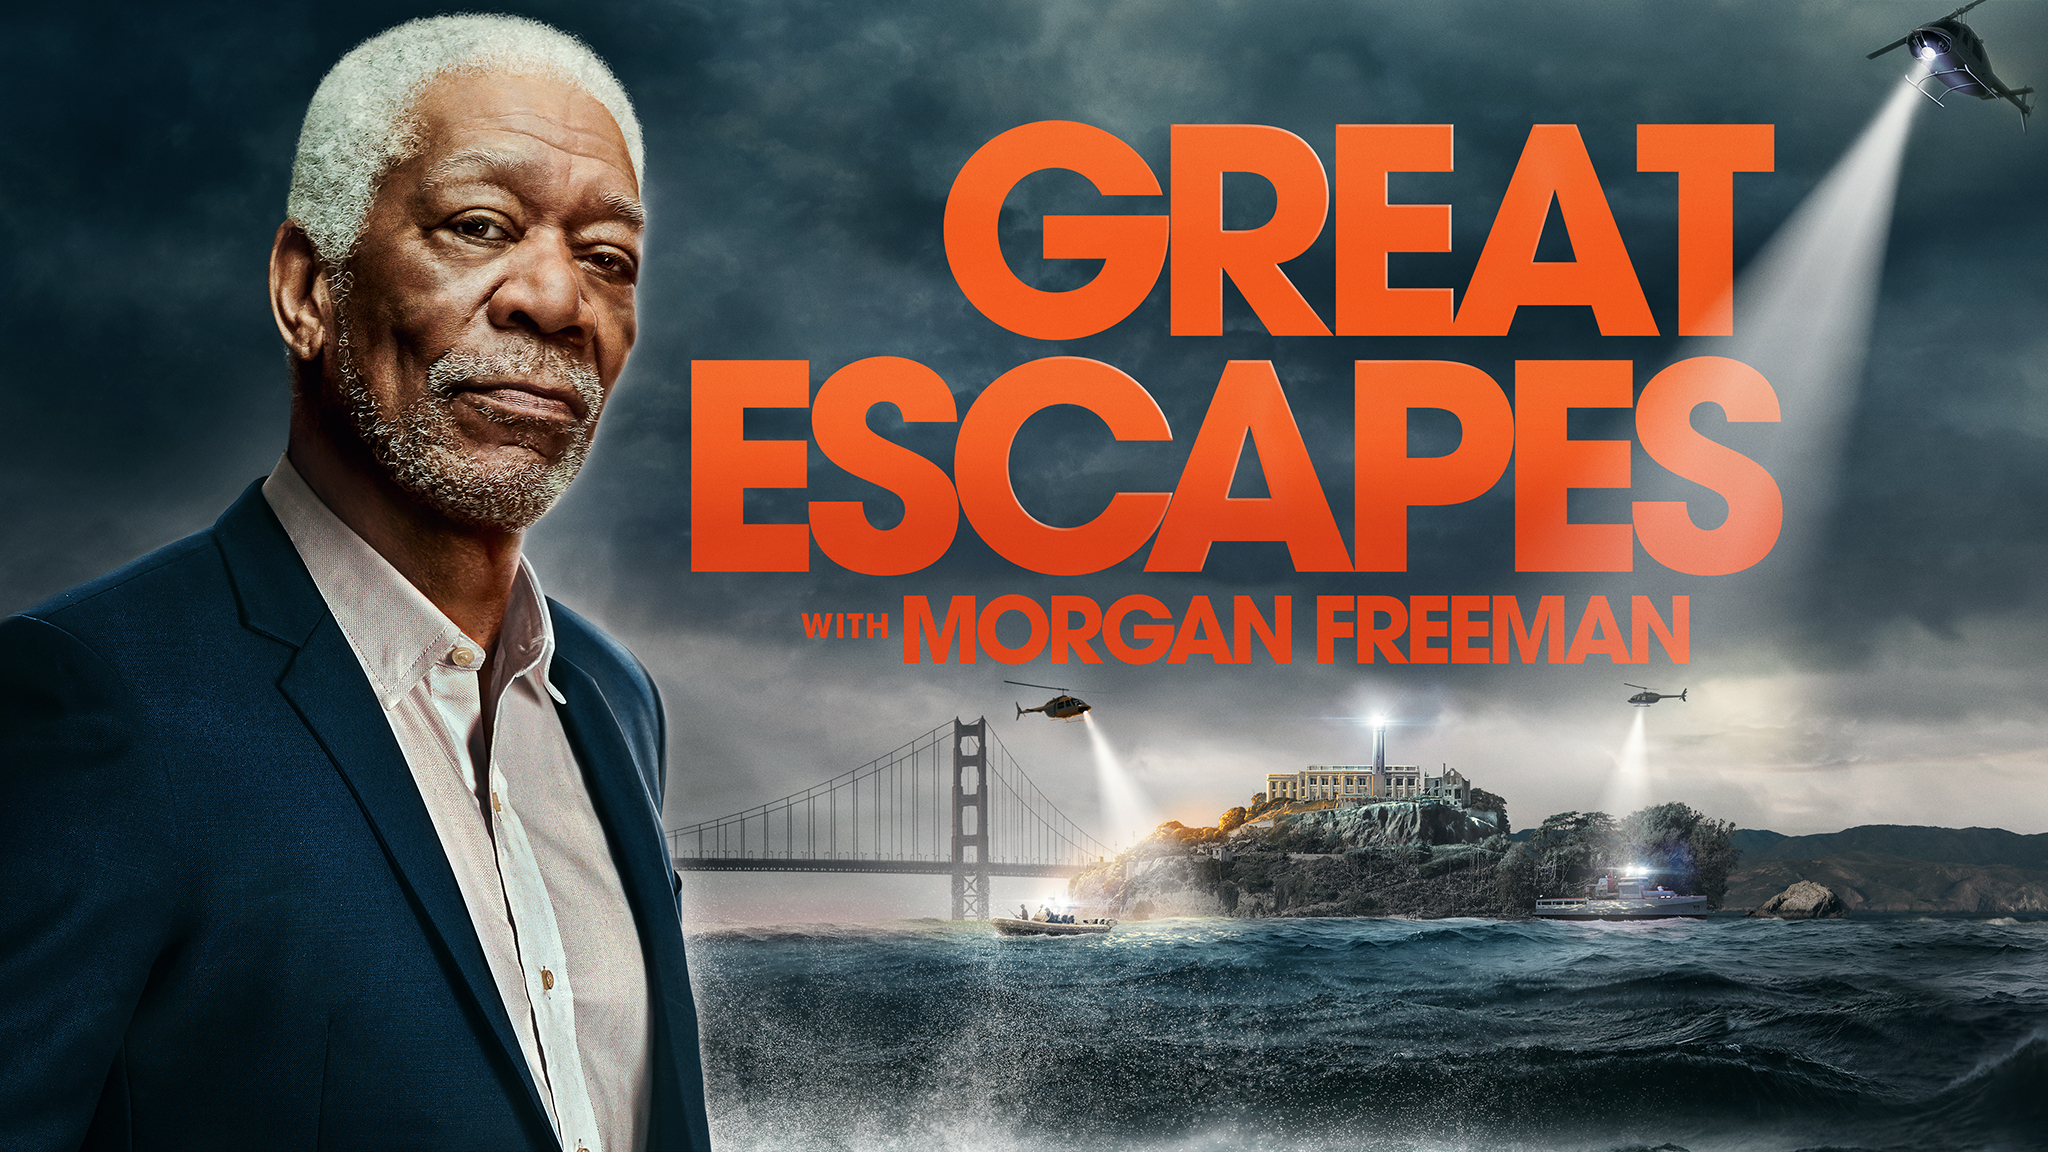 The great escape season 4 ep 6